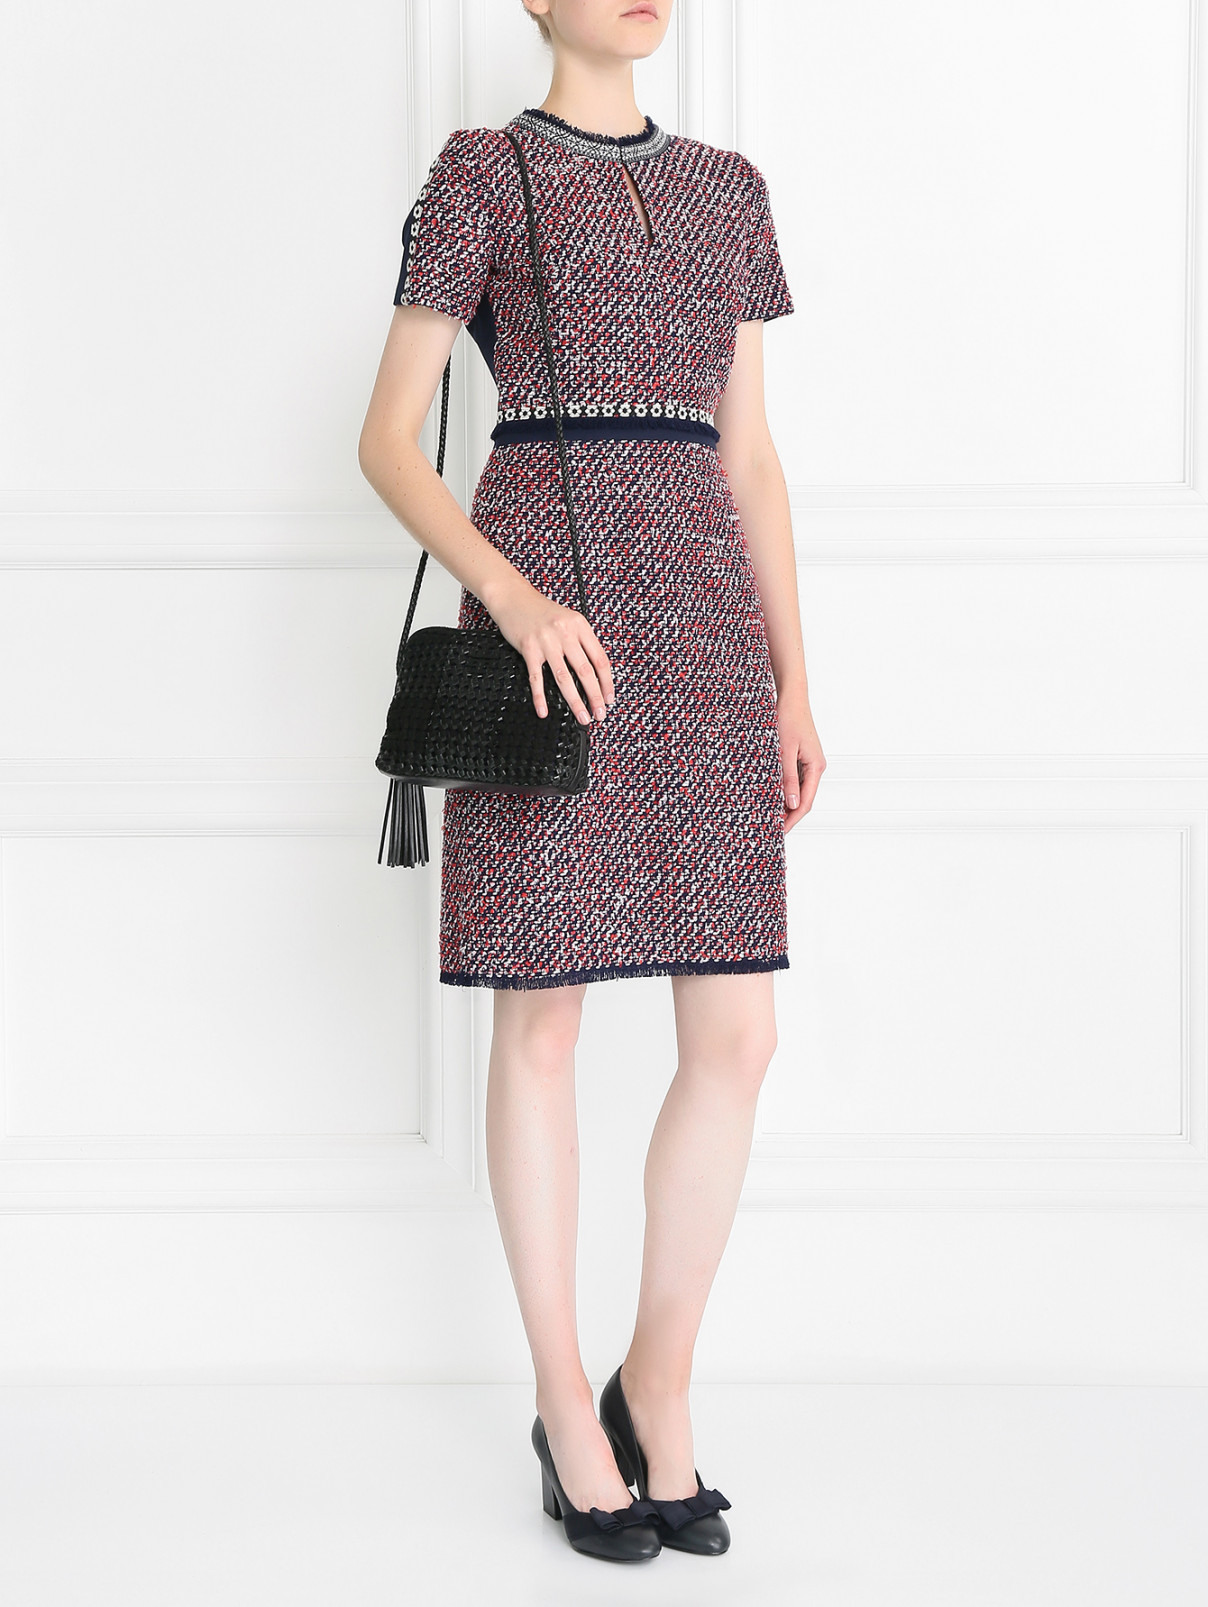 Платье-футляр из комбинированной ткани Tory Burch  –  Модель Общий вид  – Цвет:  Мультиколор